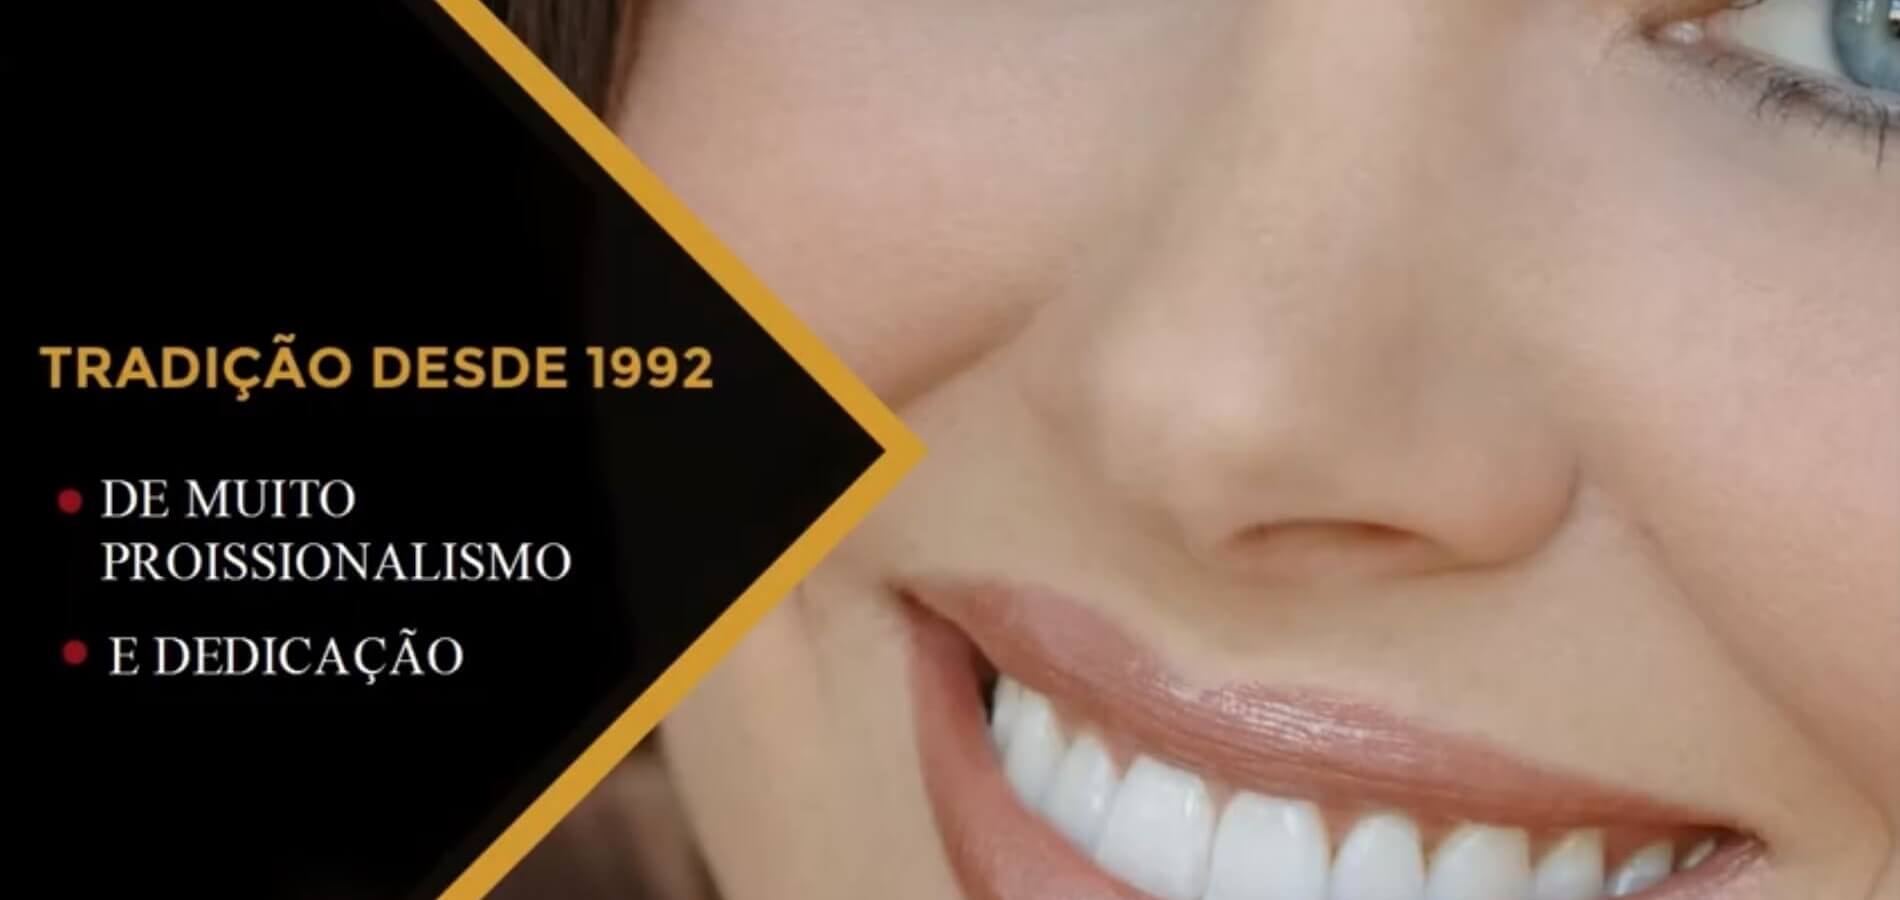 Clínica de Odontologia e Ortodontia em Curitiba. Implantes, Estética dental, Aparelhos ortodônticos, Alinhadores ortodônticos, Ortodontia estética.